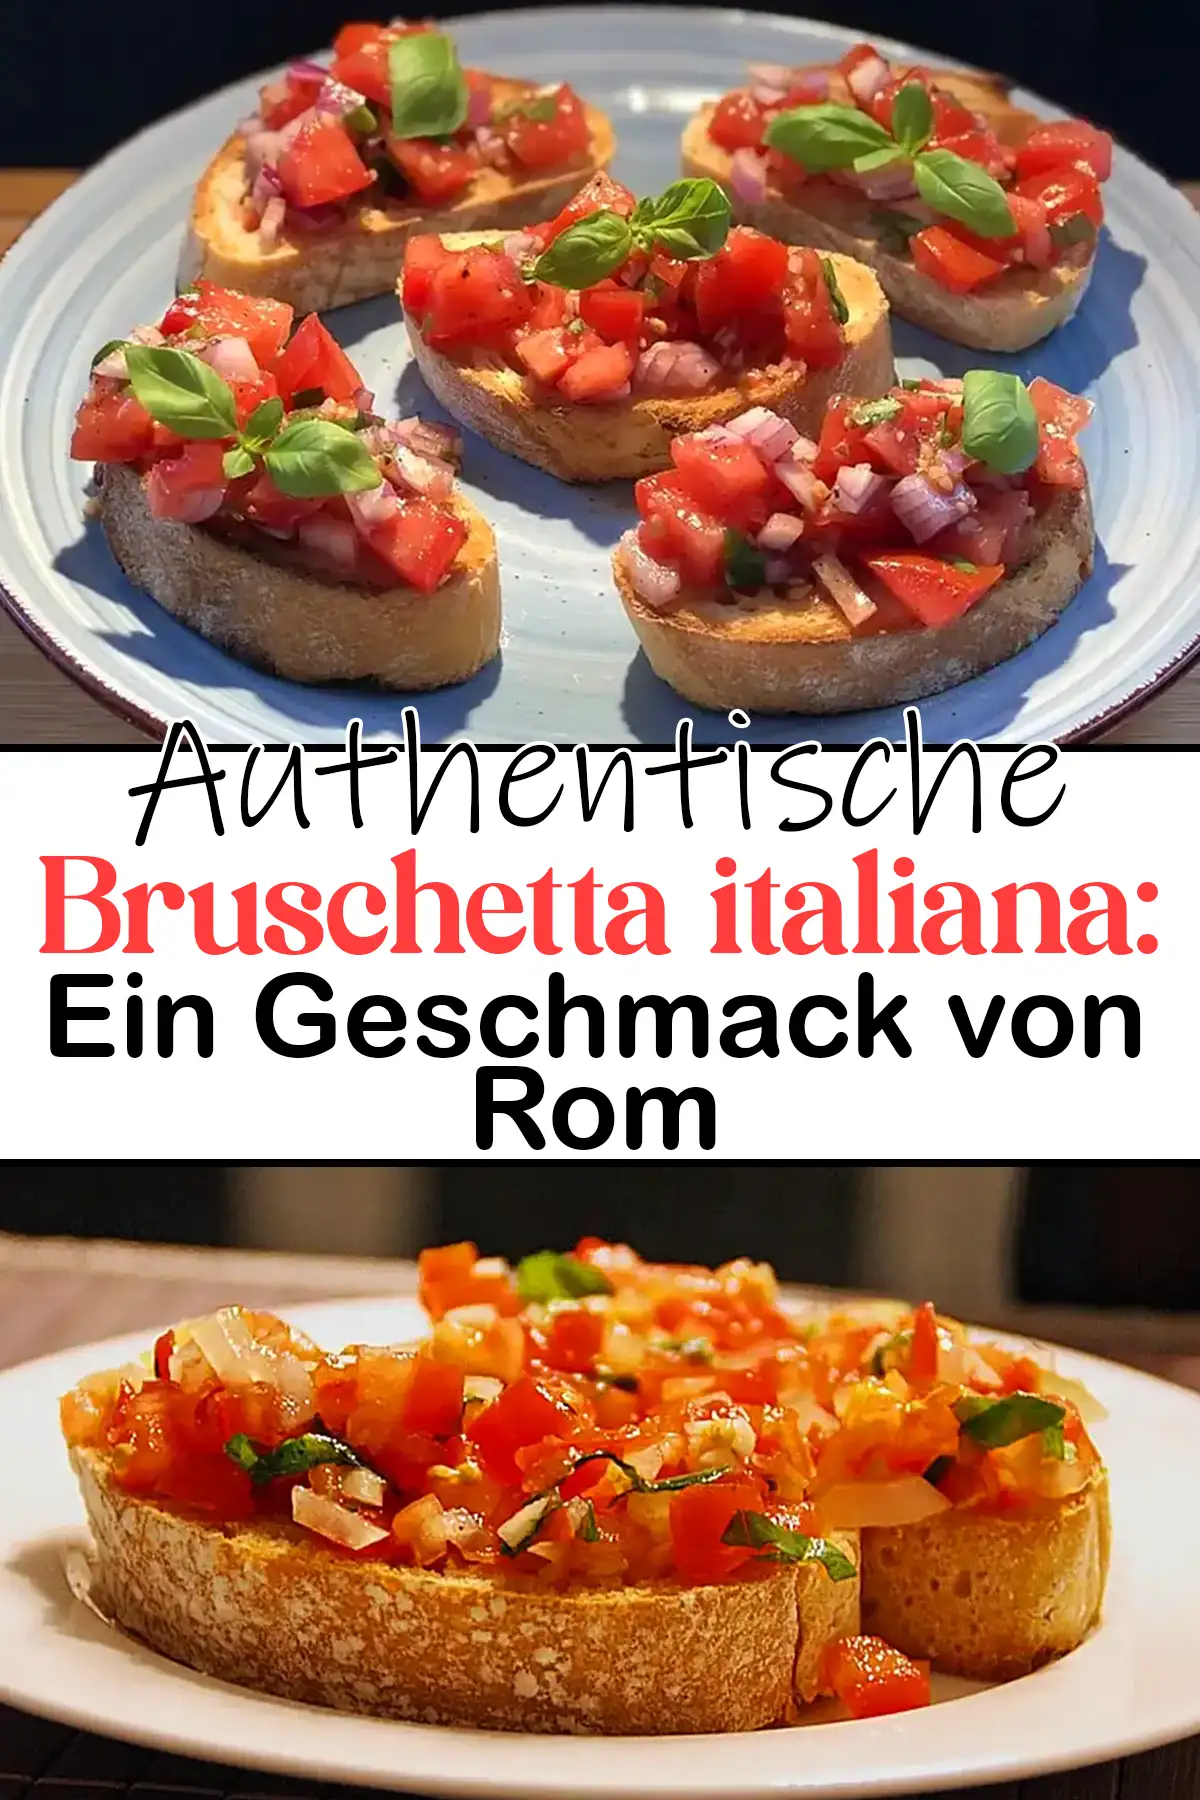 Authentische Bruschetta italiana: Ein Geschmack von Rom